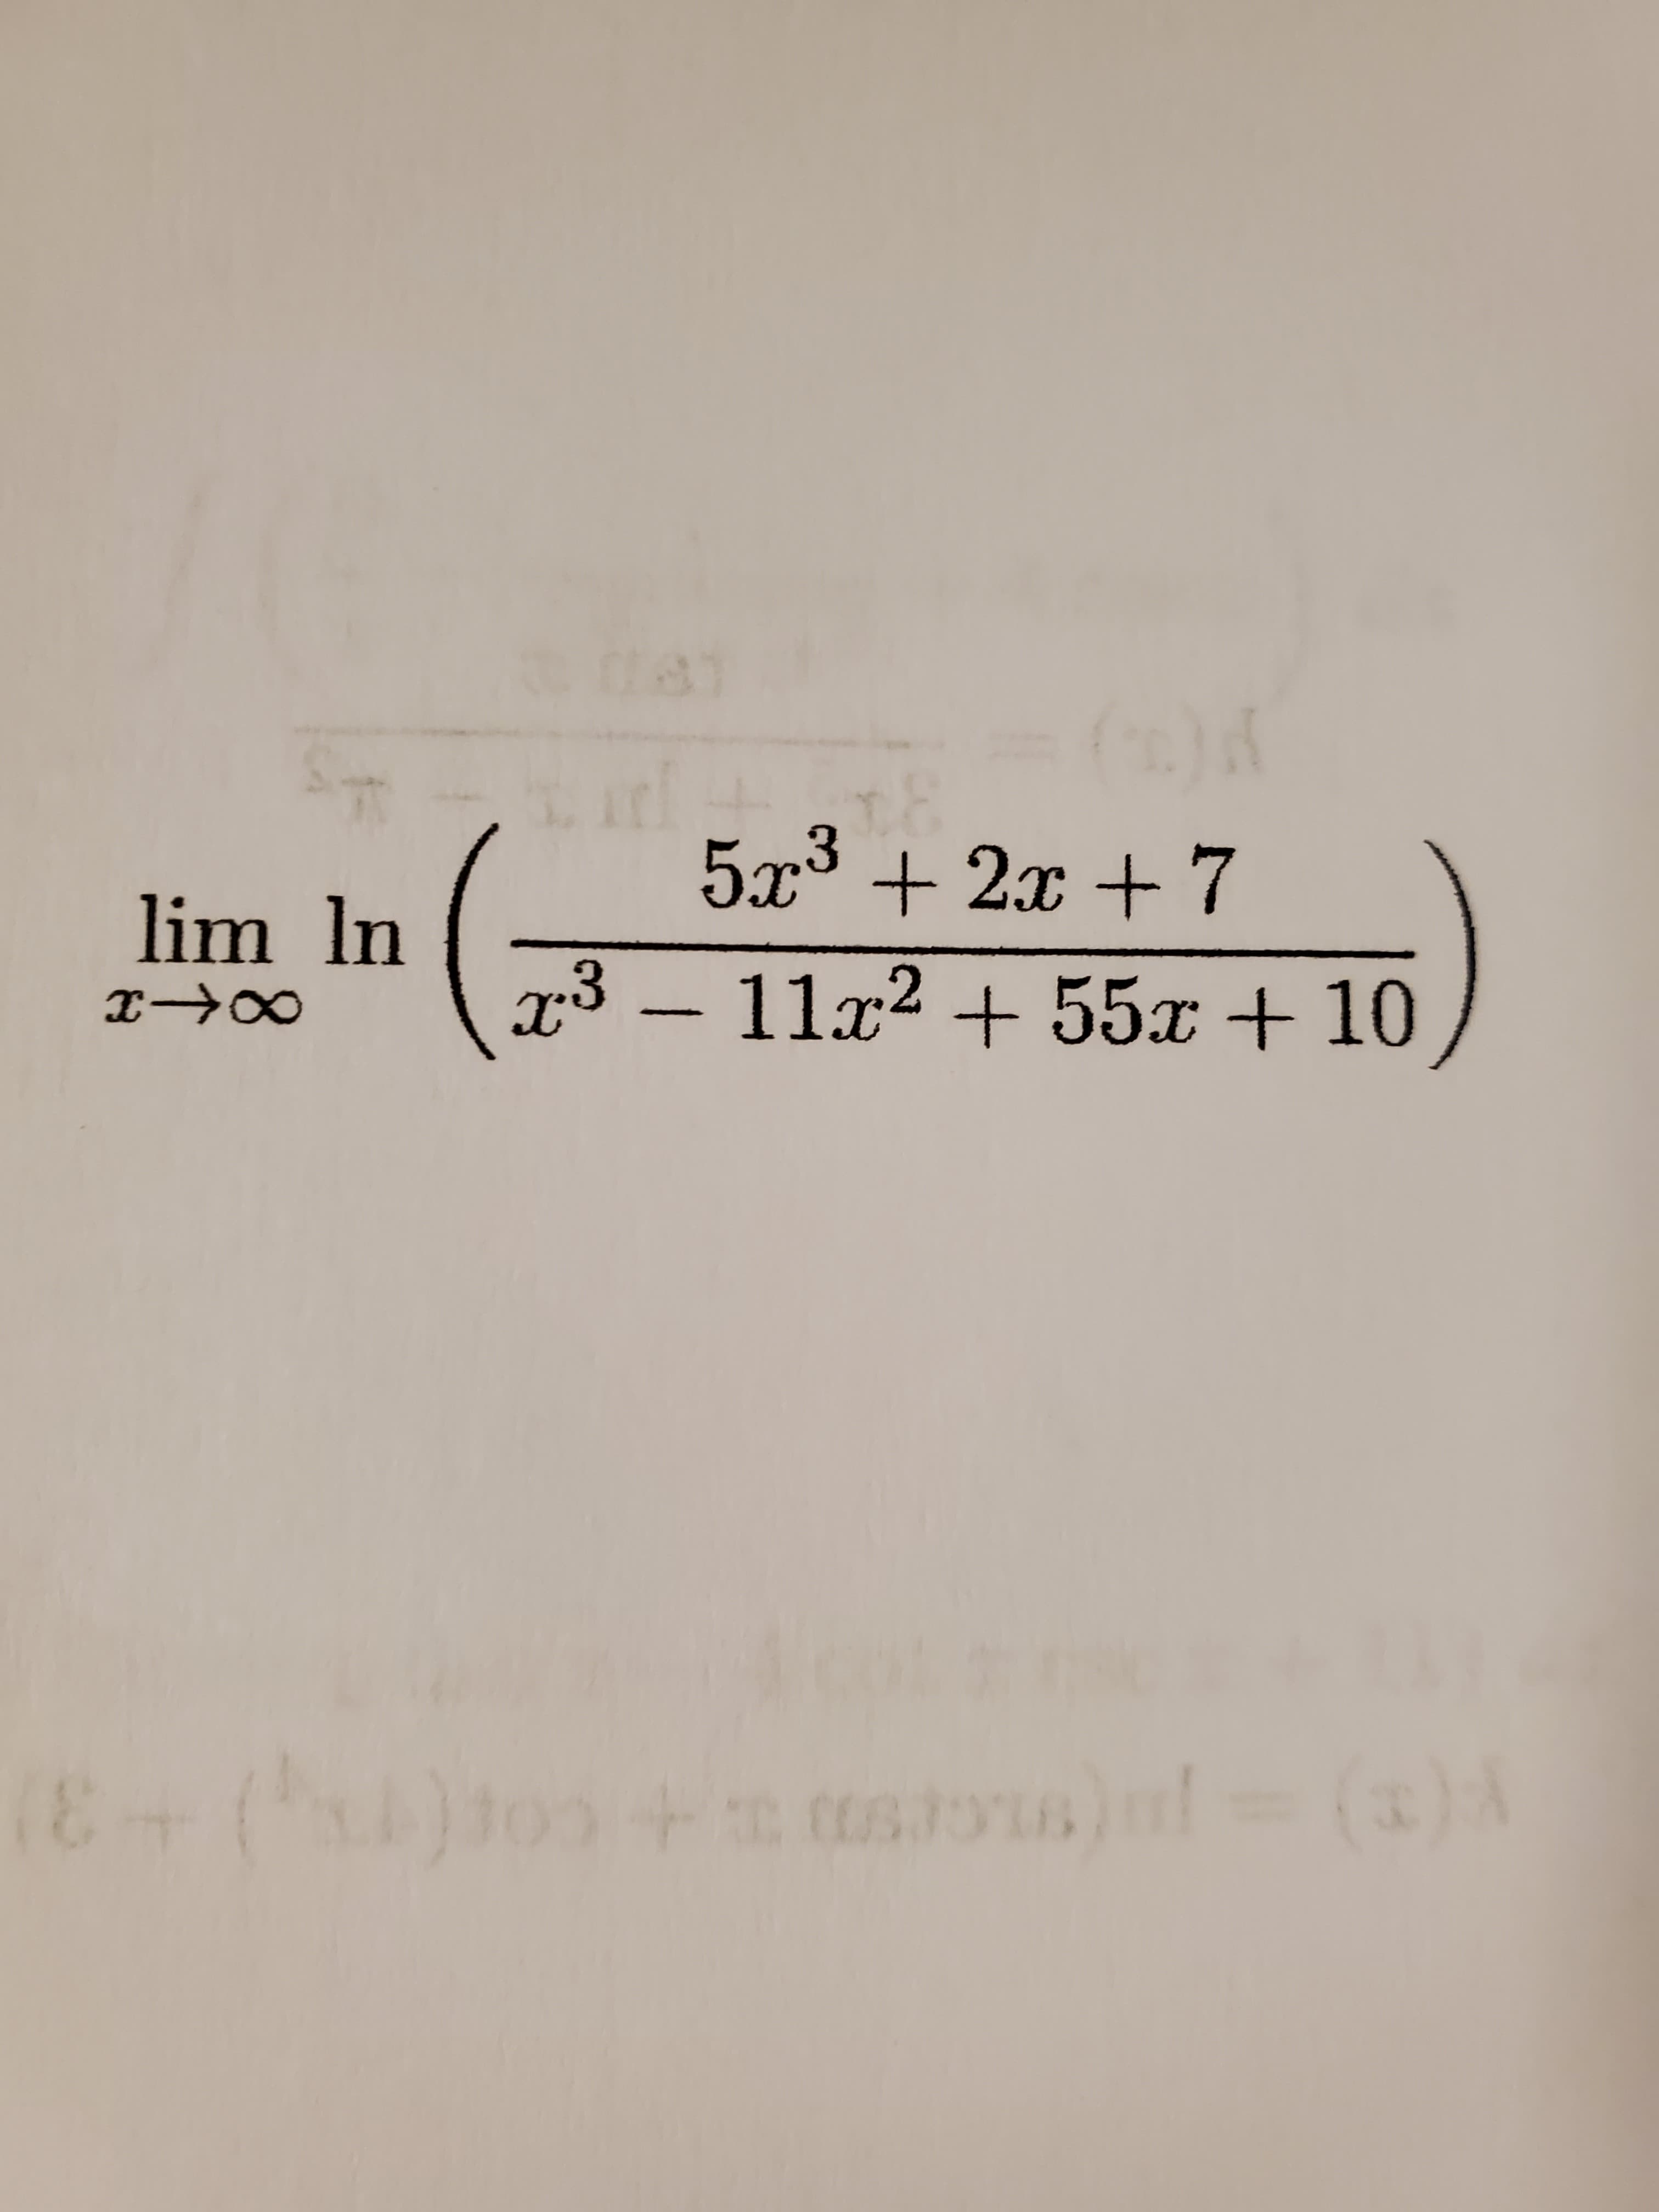 81
5x³ + 2x + 7
lim In
x³ -11x2 + 55x + 10
(3)A
(8+()+ s)l
